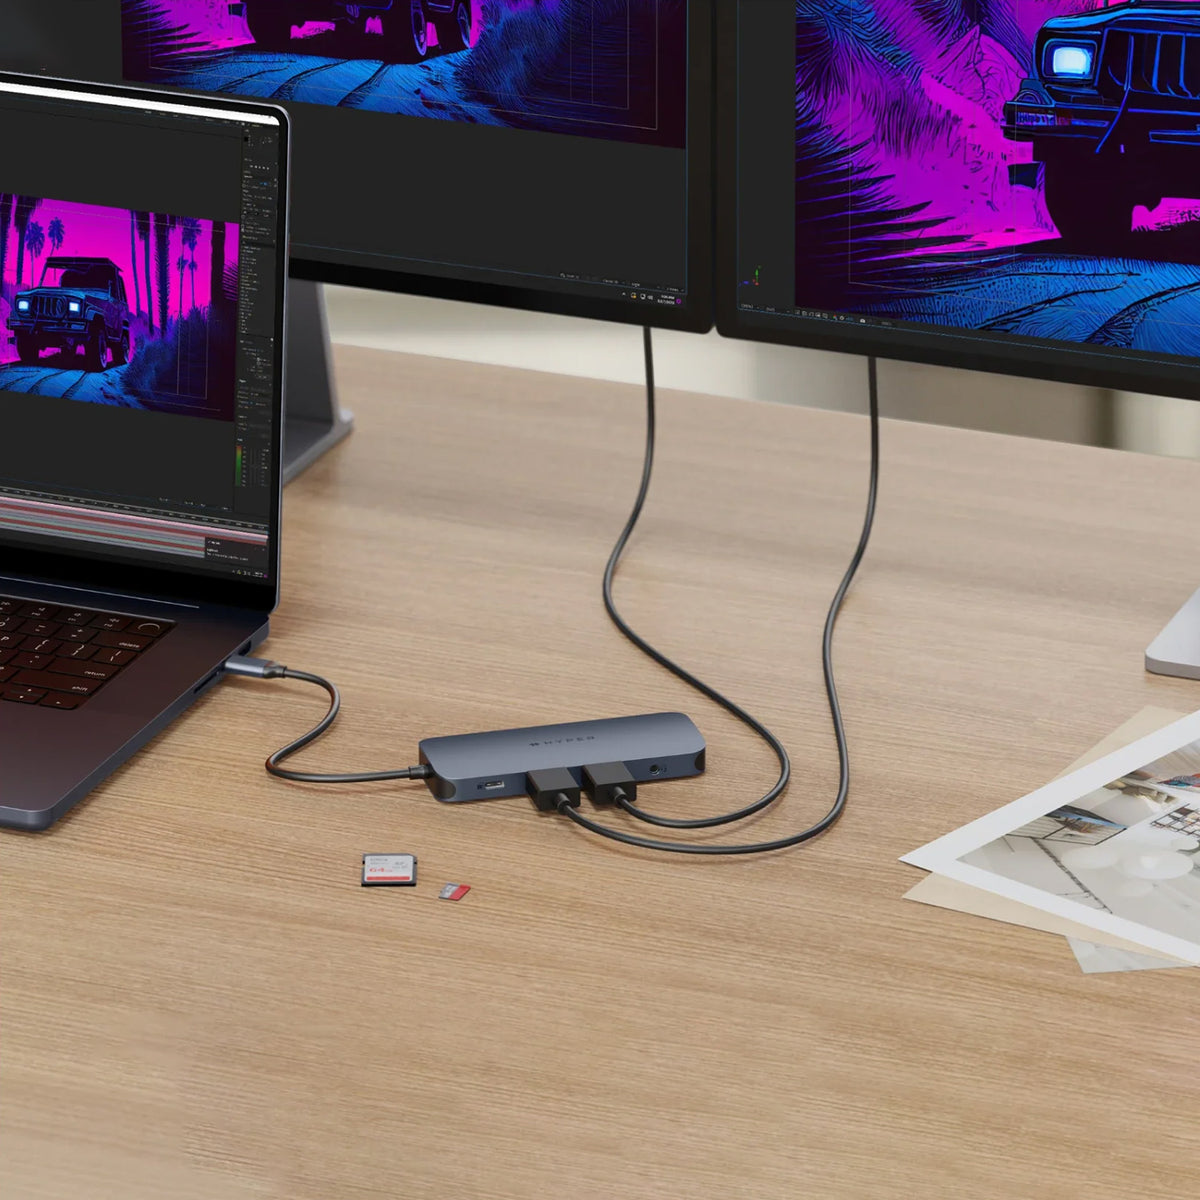 【予約】HyperDrive Next Dual 4K60Hz HDMI 11 Port USB-C ハブ